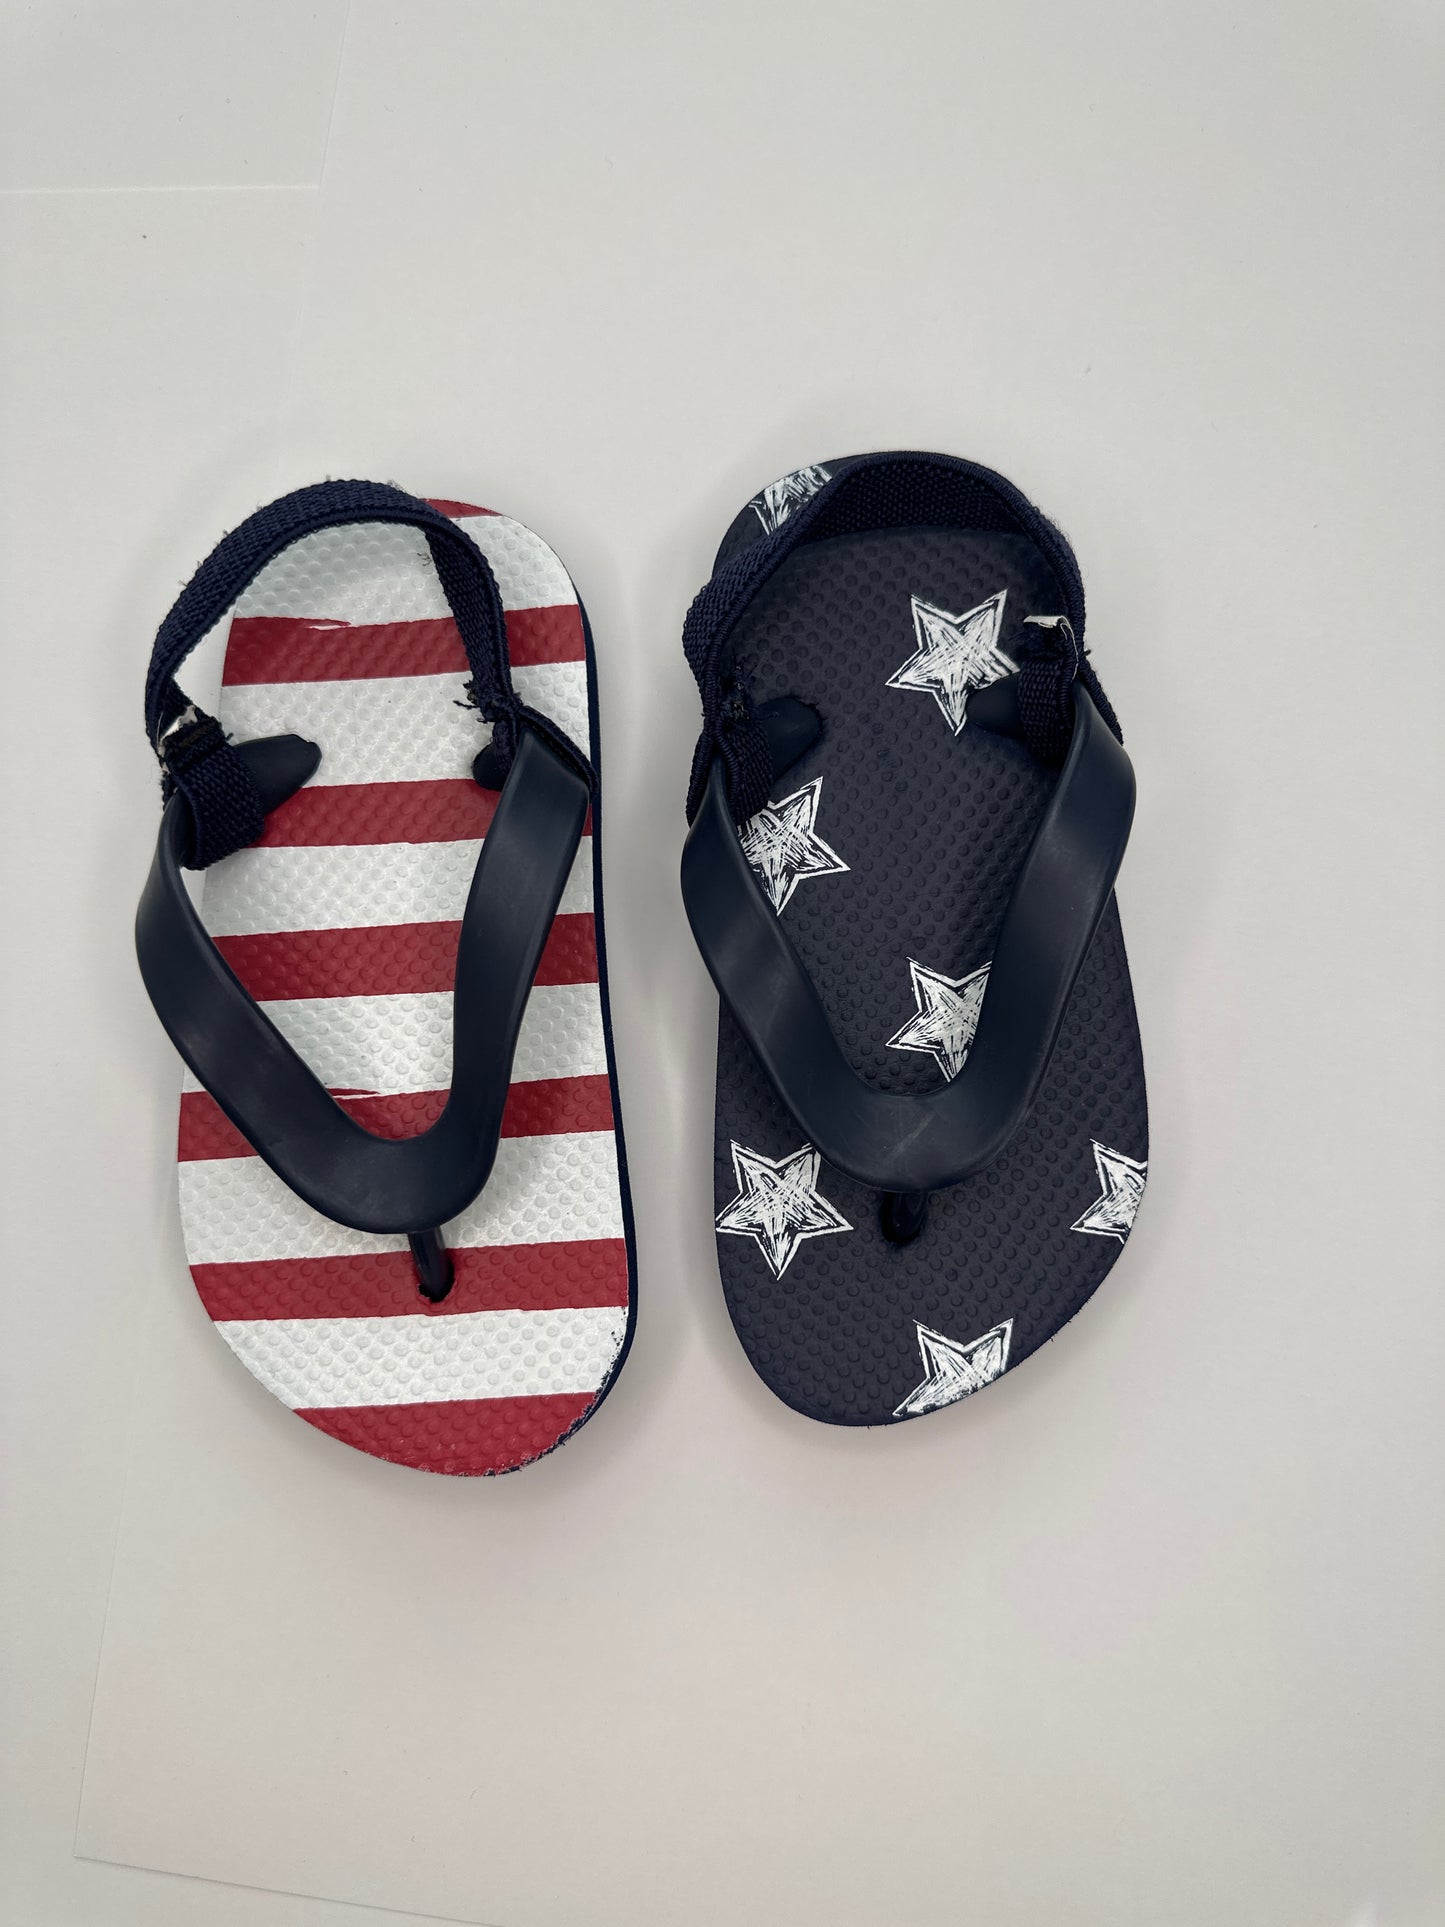 U.S. American Flag Flip Flops with back strap - Toddler Size 6/7